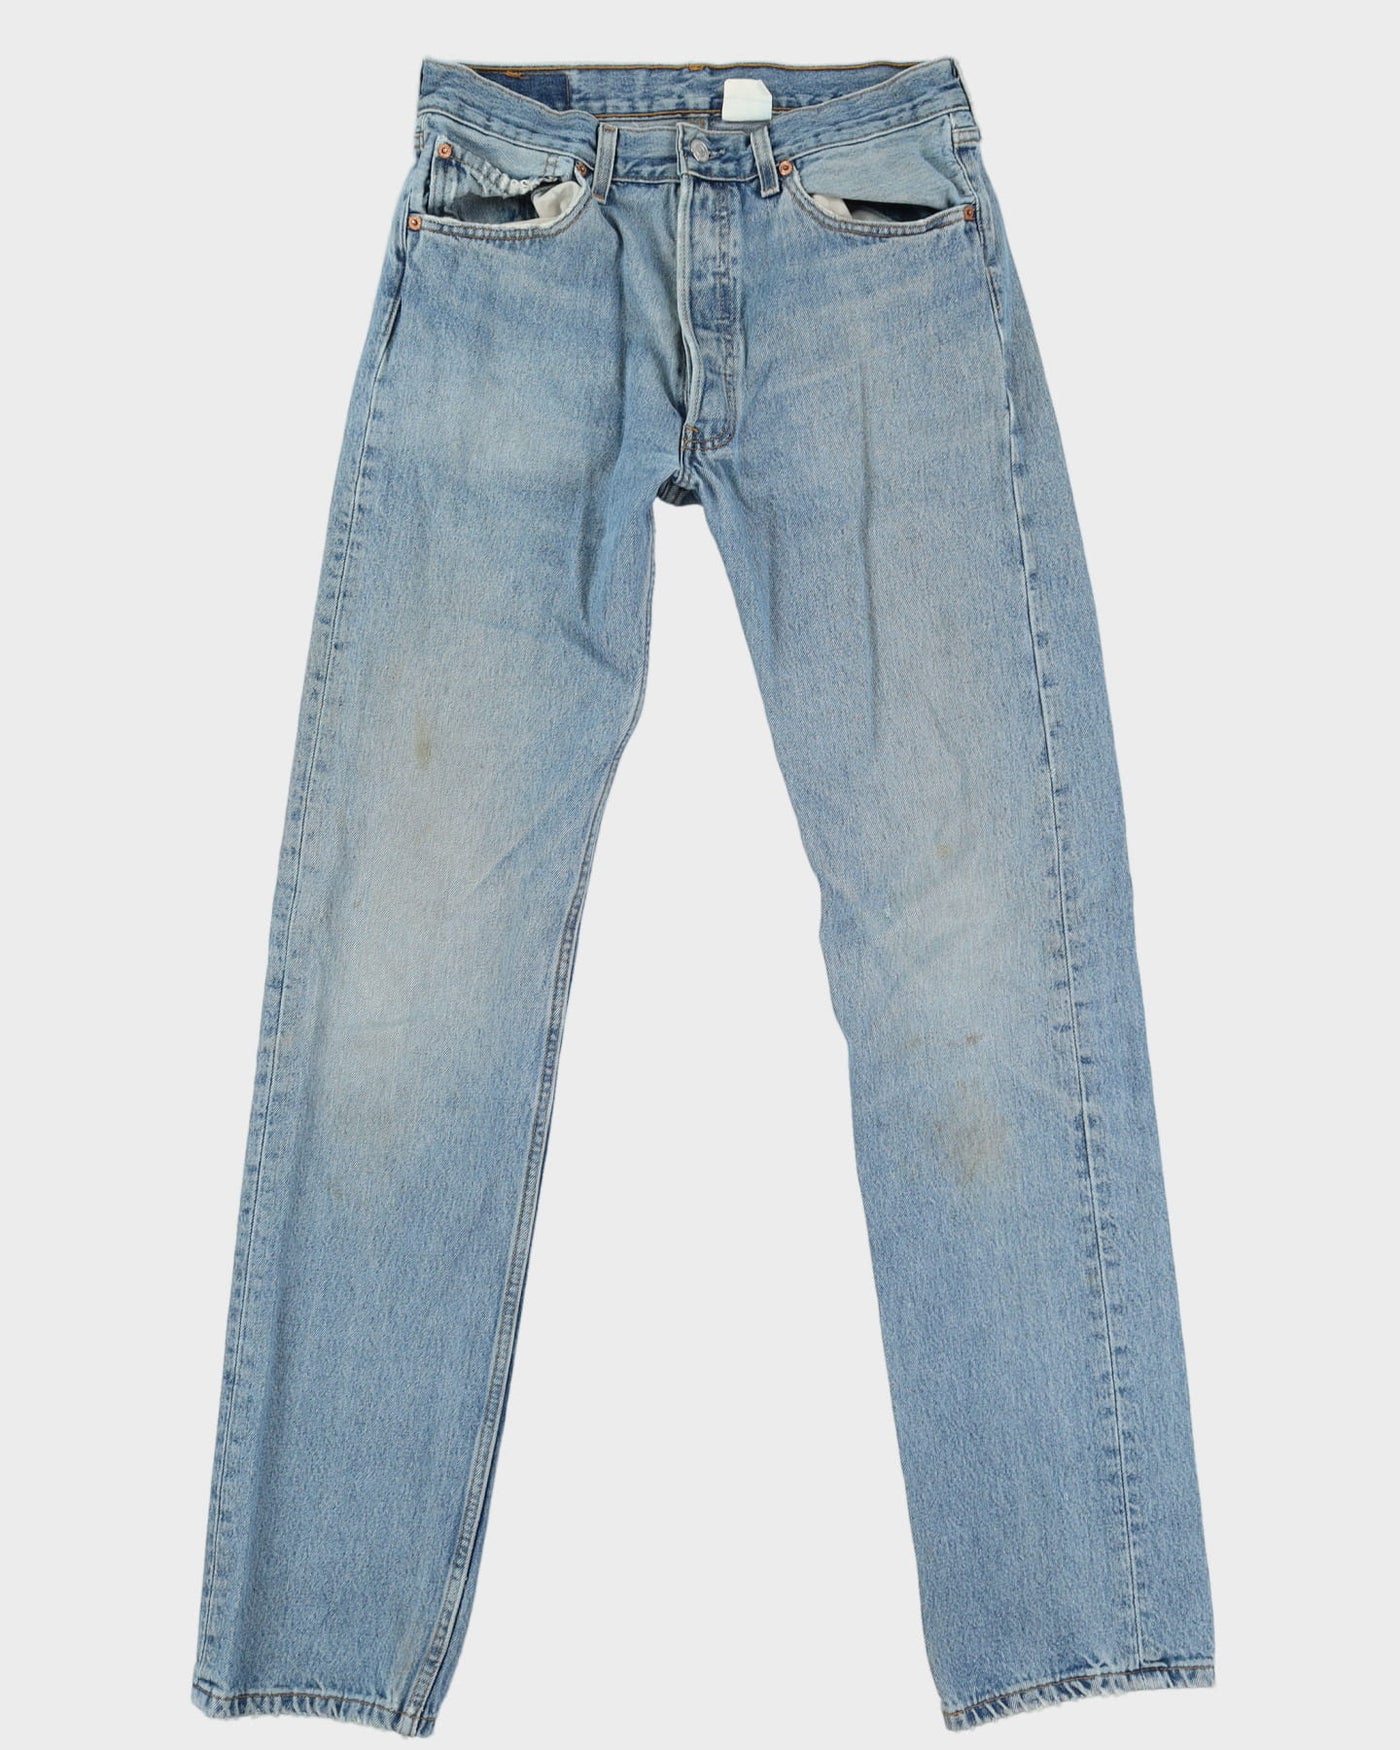 Vintage 80s Levi's 501 Blue Light Wash Jeans - W32 L35